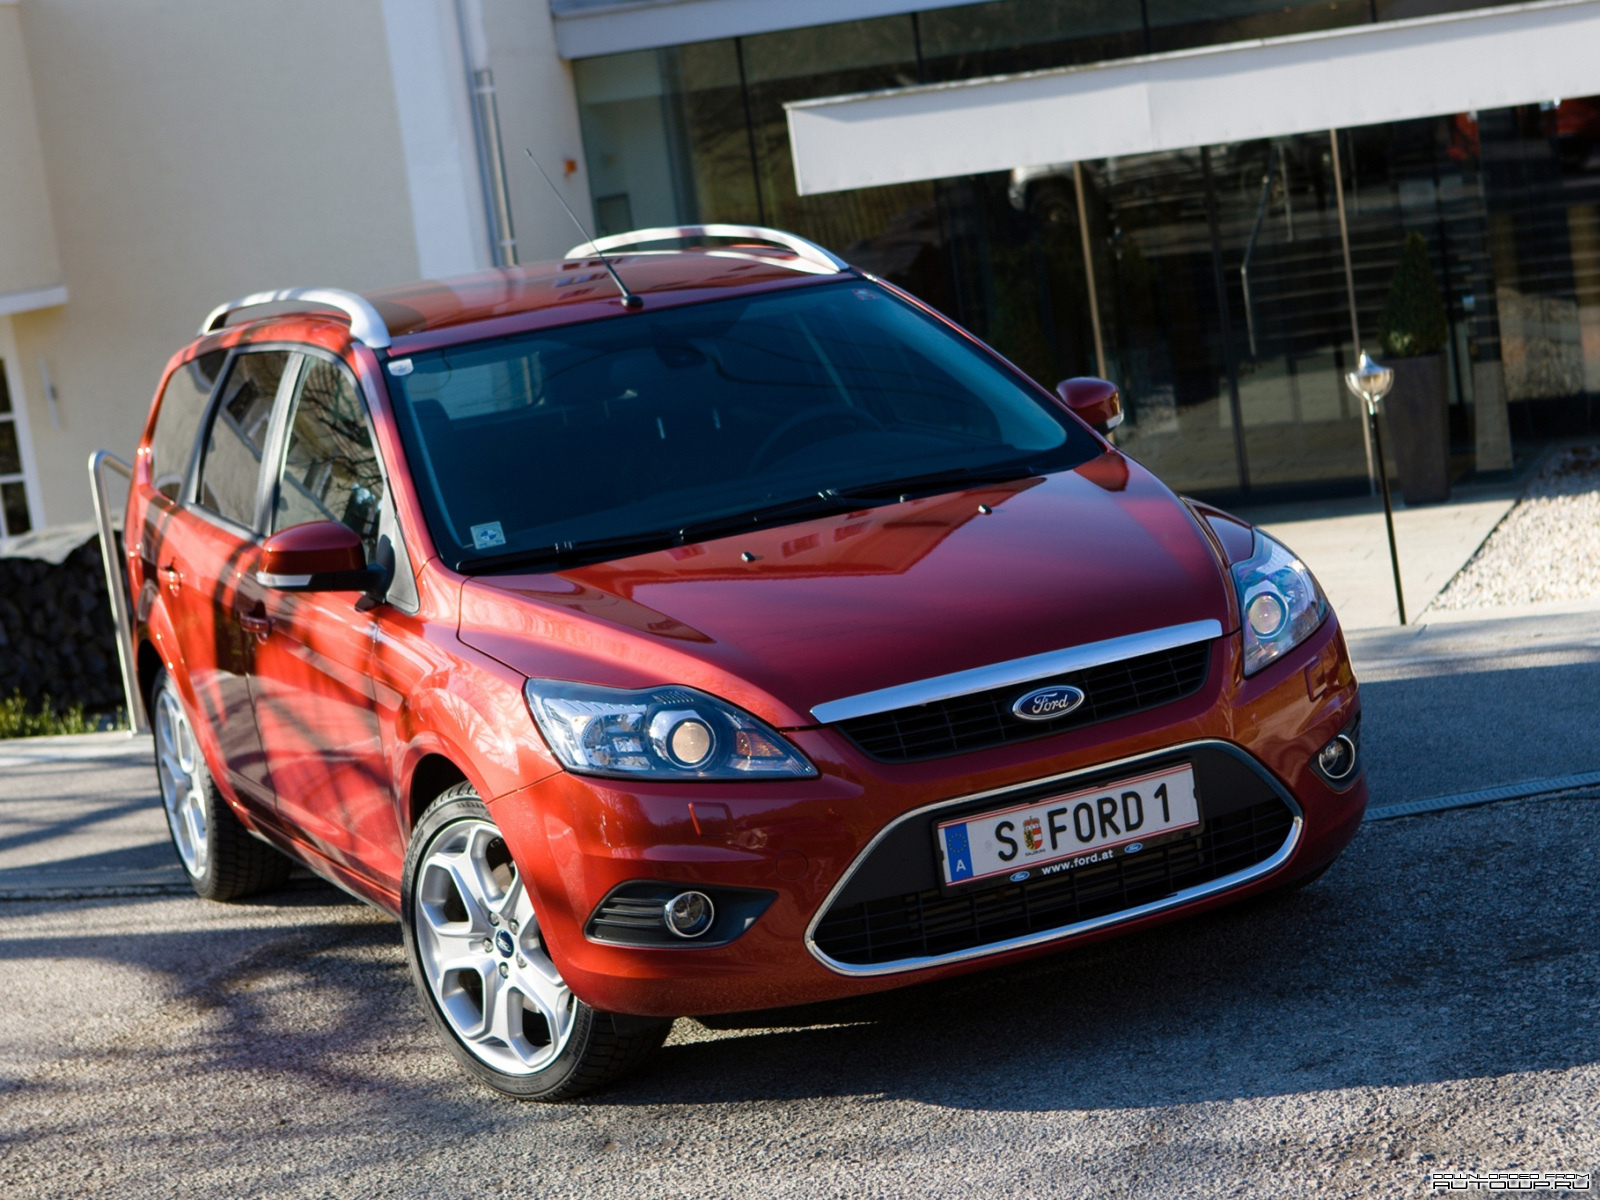 Ford Focus (Форд Фокус) - Продажа, Цены, Отзывы, Фото ...